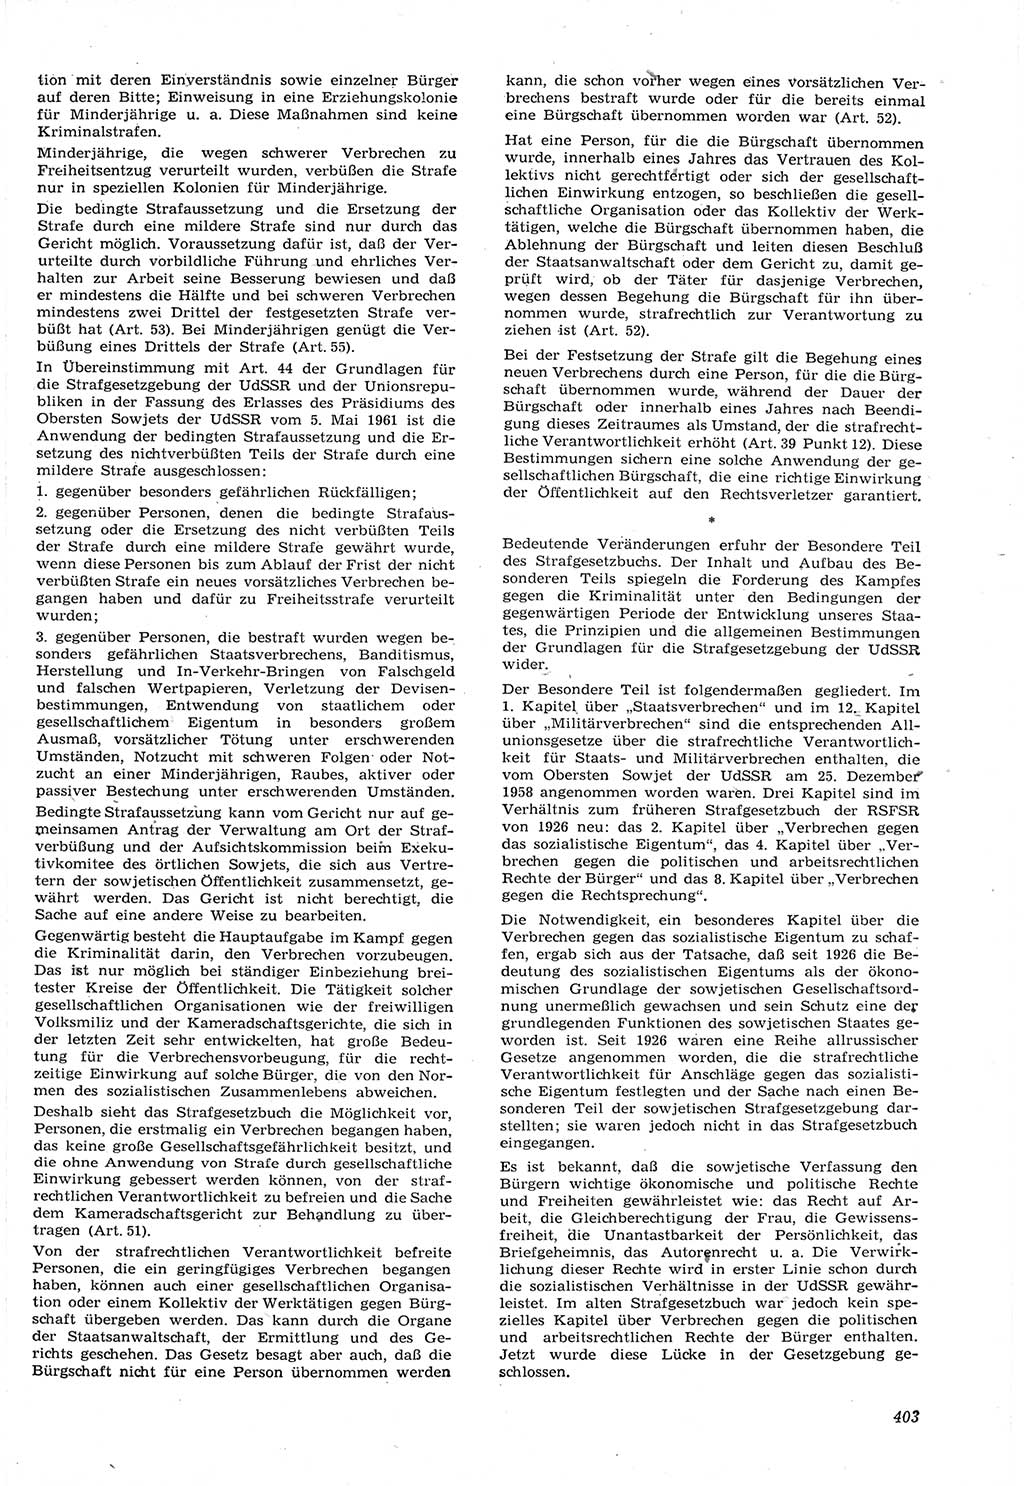 Neue Justiz (NJ), Zeitschrift für Recht und Rechtswissenschaft [Deutsche Demokratische Republik (DDR)], 15. Jahrgang 1961, Seite 403 (NJ DDR 1961, S. 403)